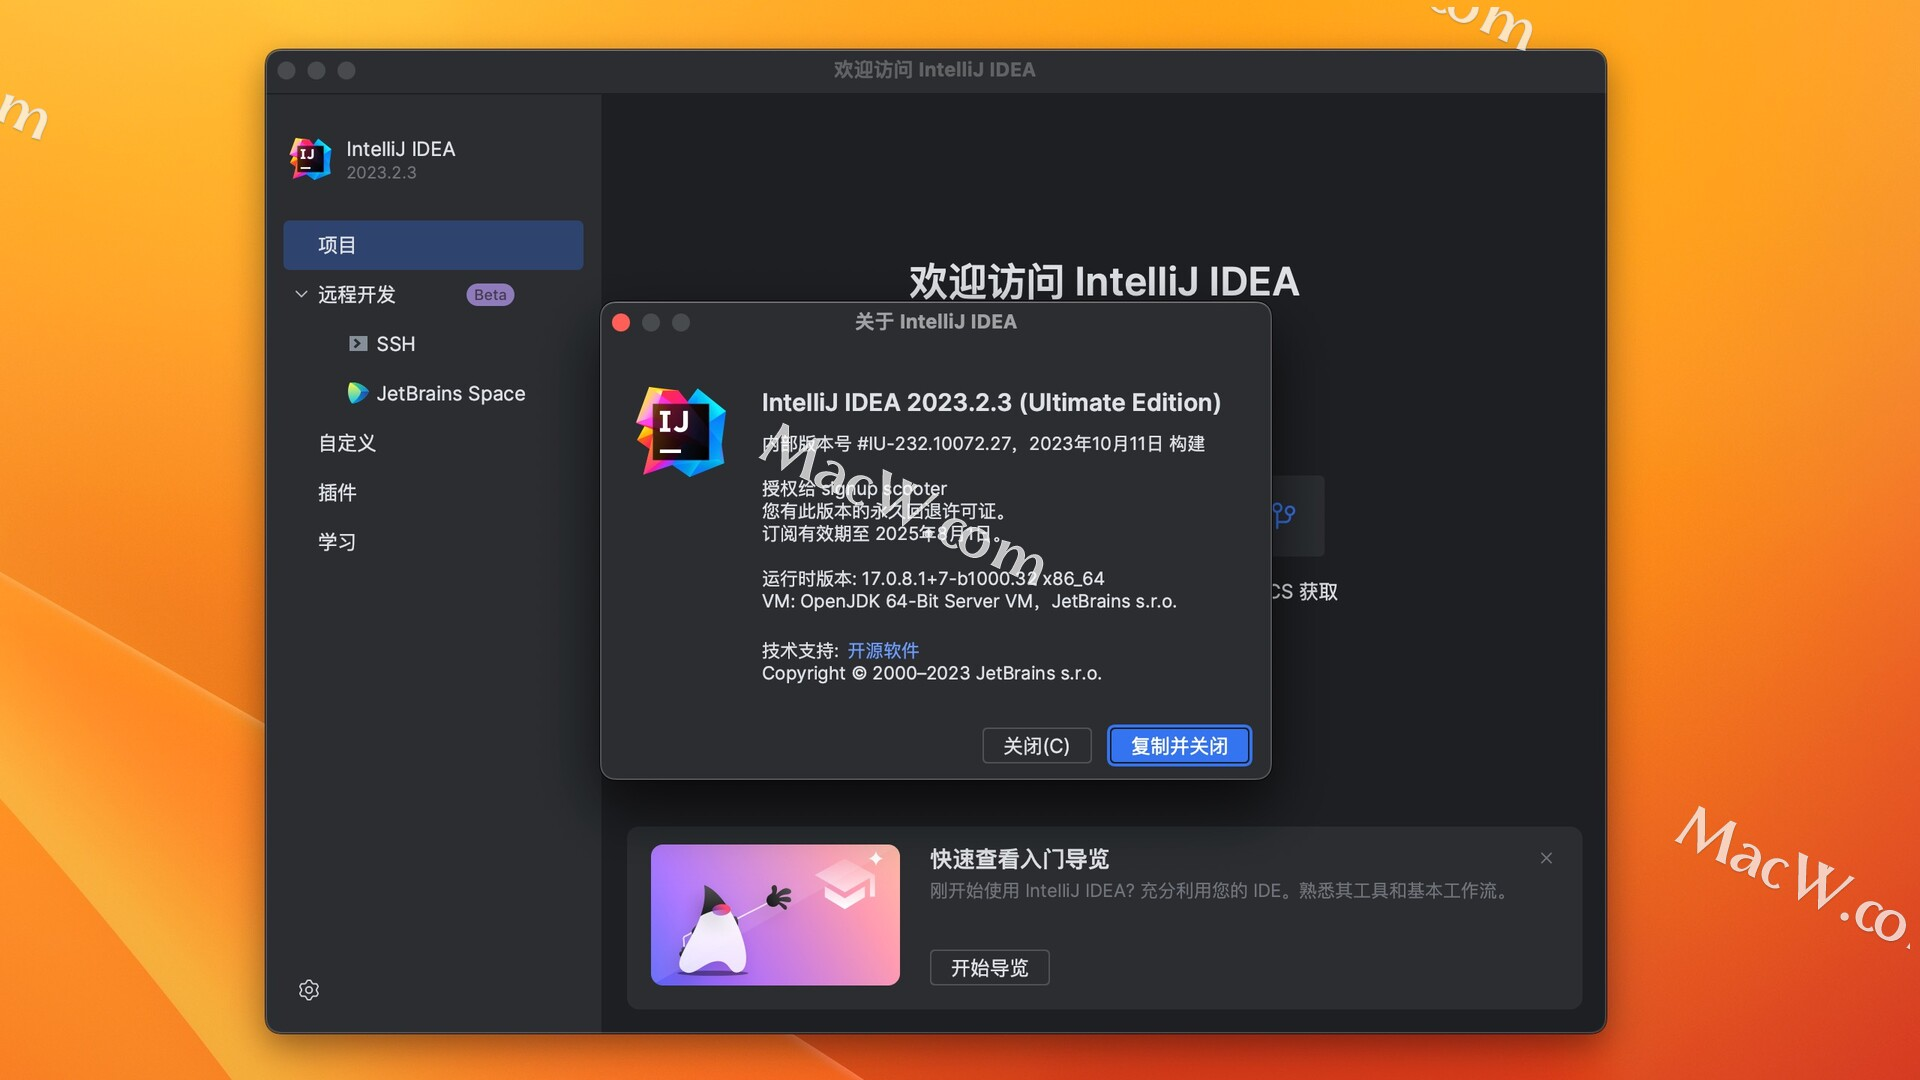 IntelliJ IDEA 2023.2.3中文激活版 及 IDEA 2023激活密钥 支持M1